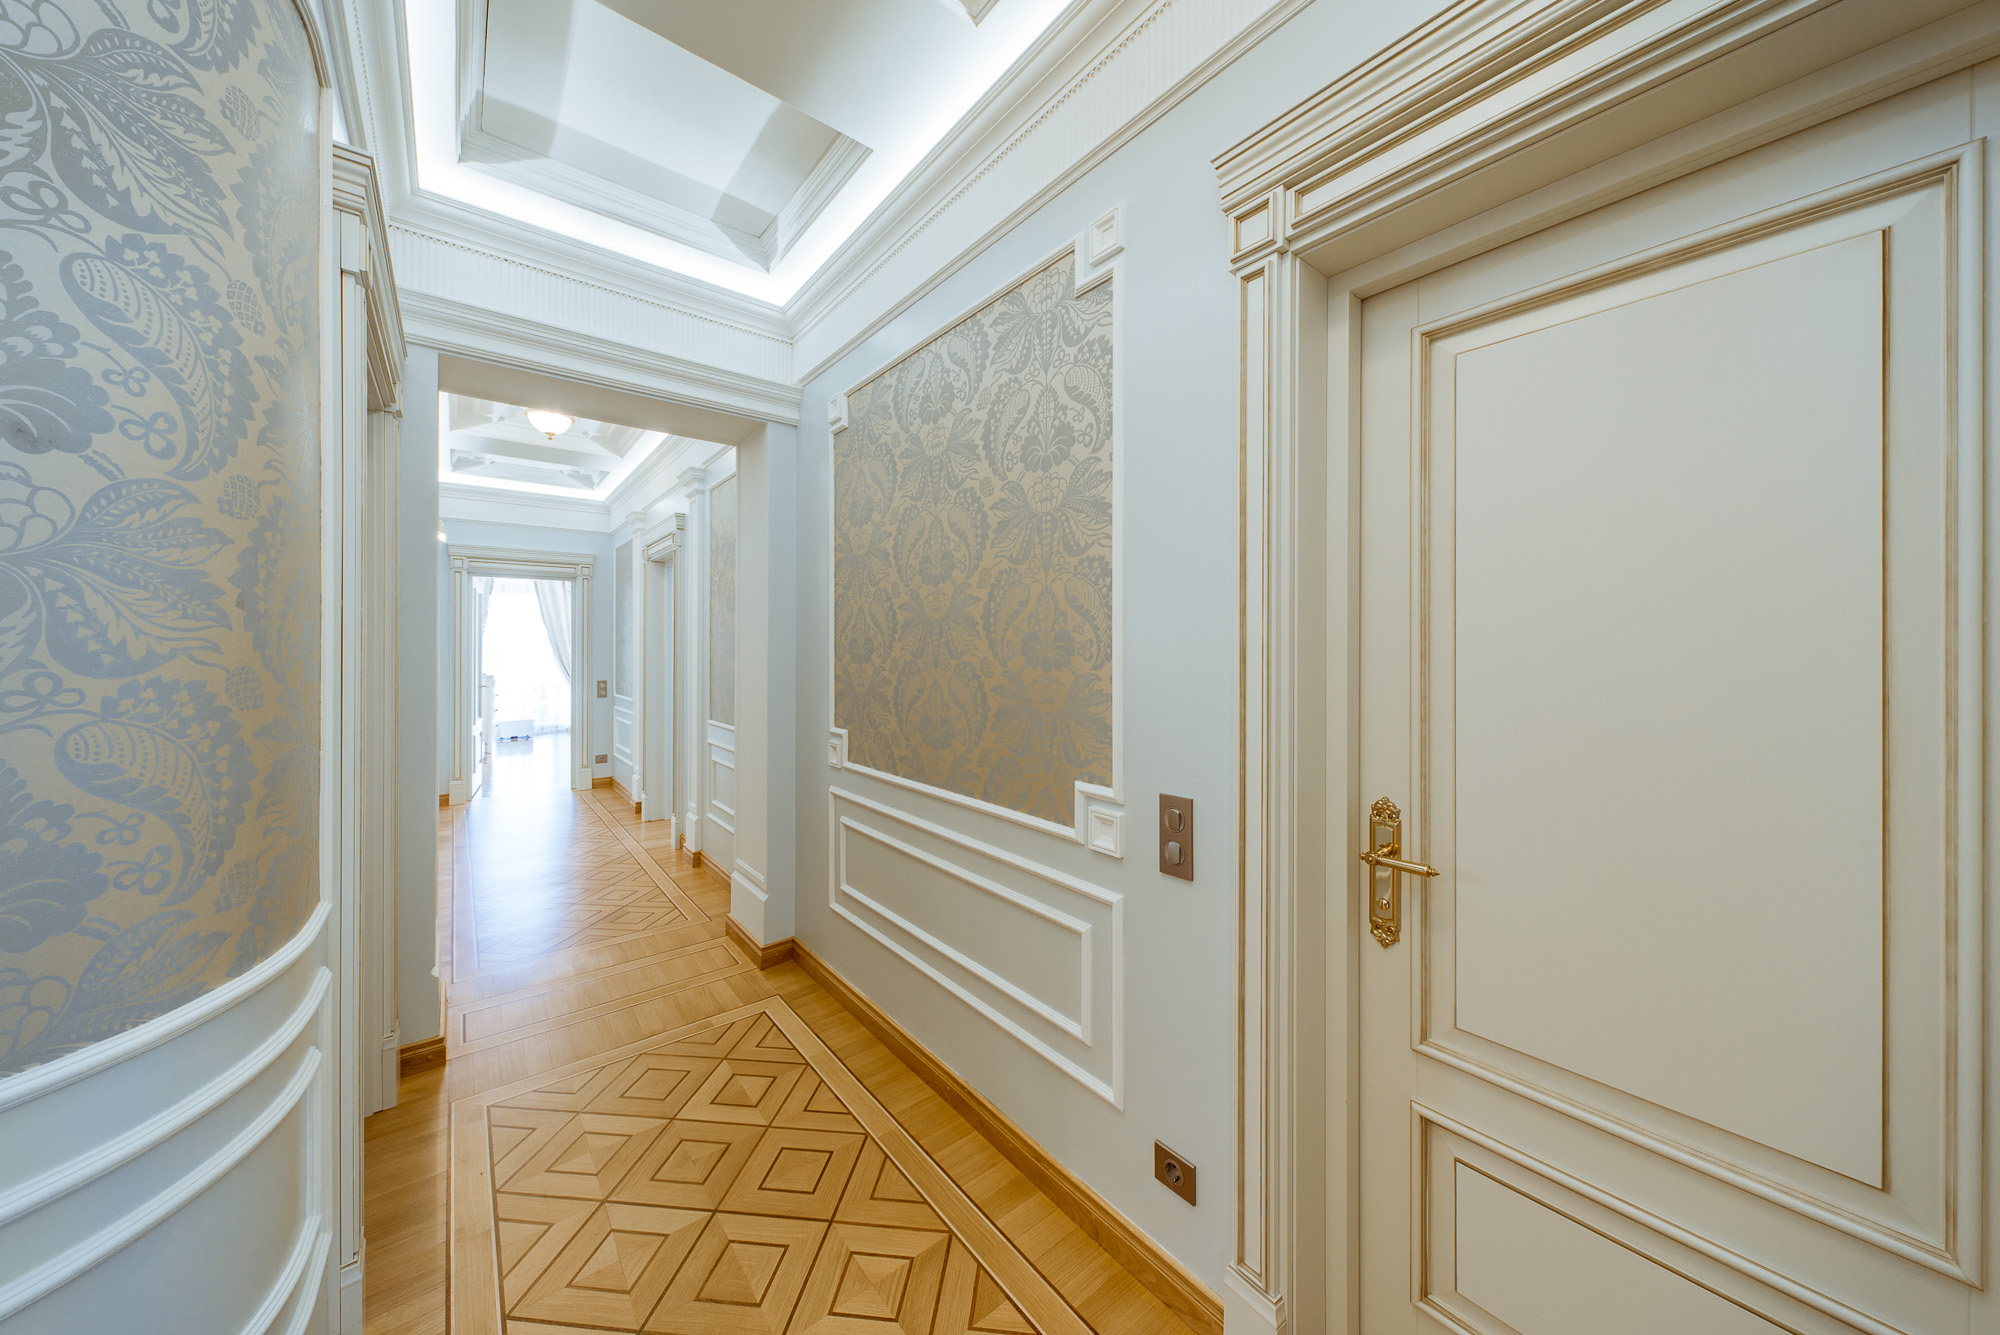 Самоклеющиеся панели в коридоре дизайн